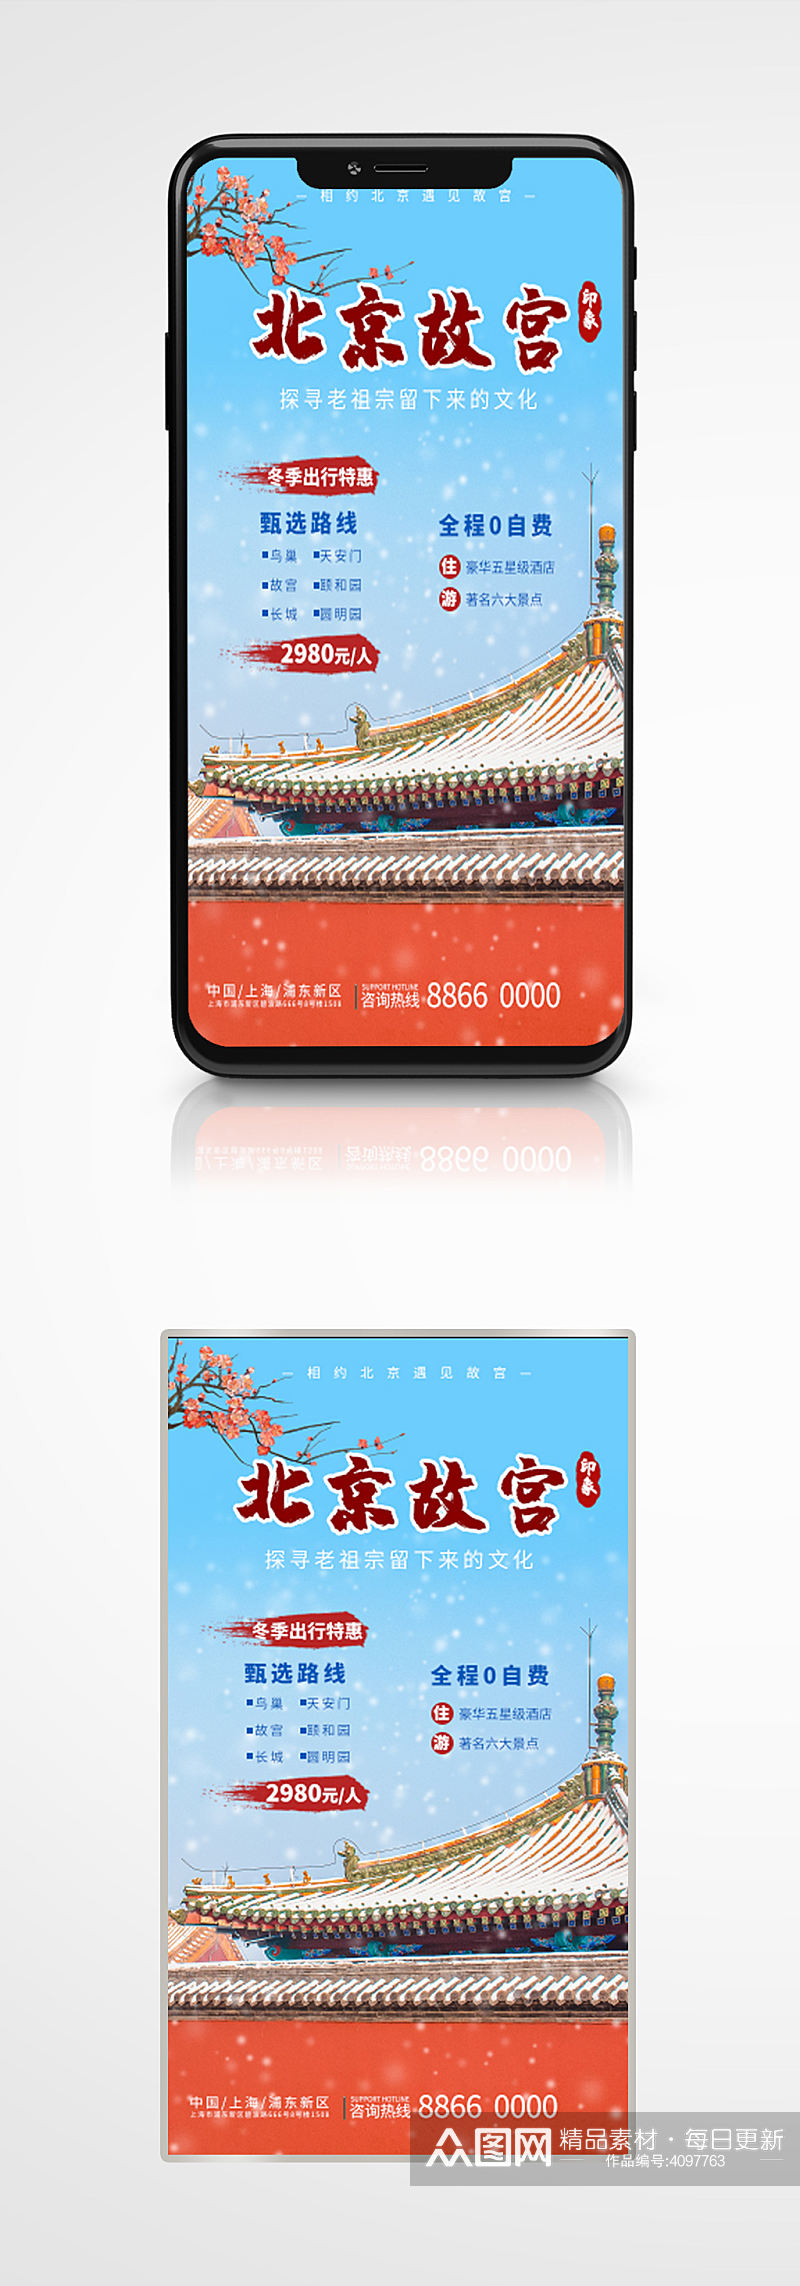 中国北京故宫冬景旅游游玩宣传推广海报素材